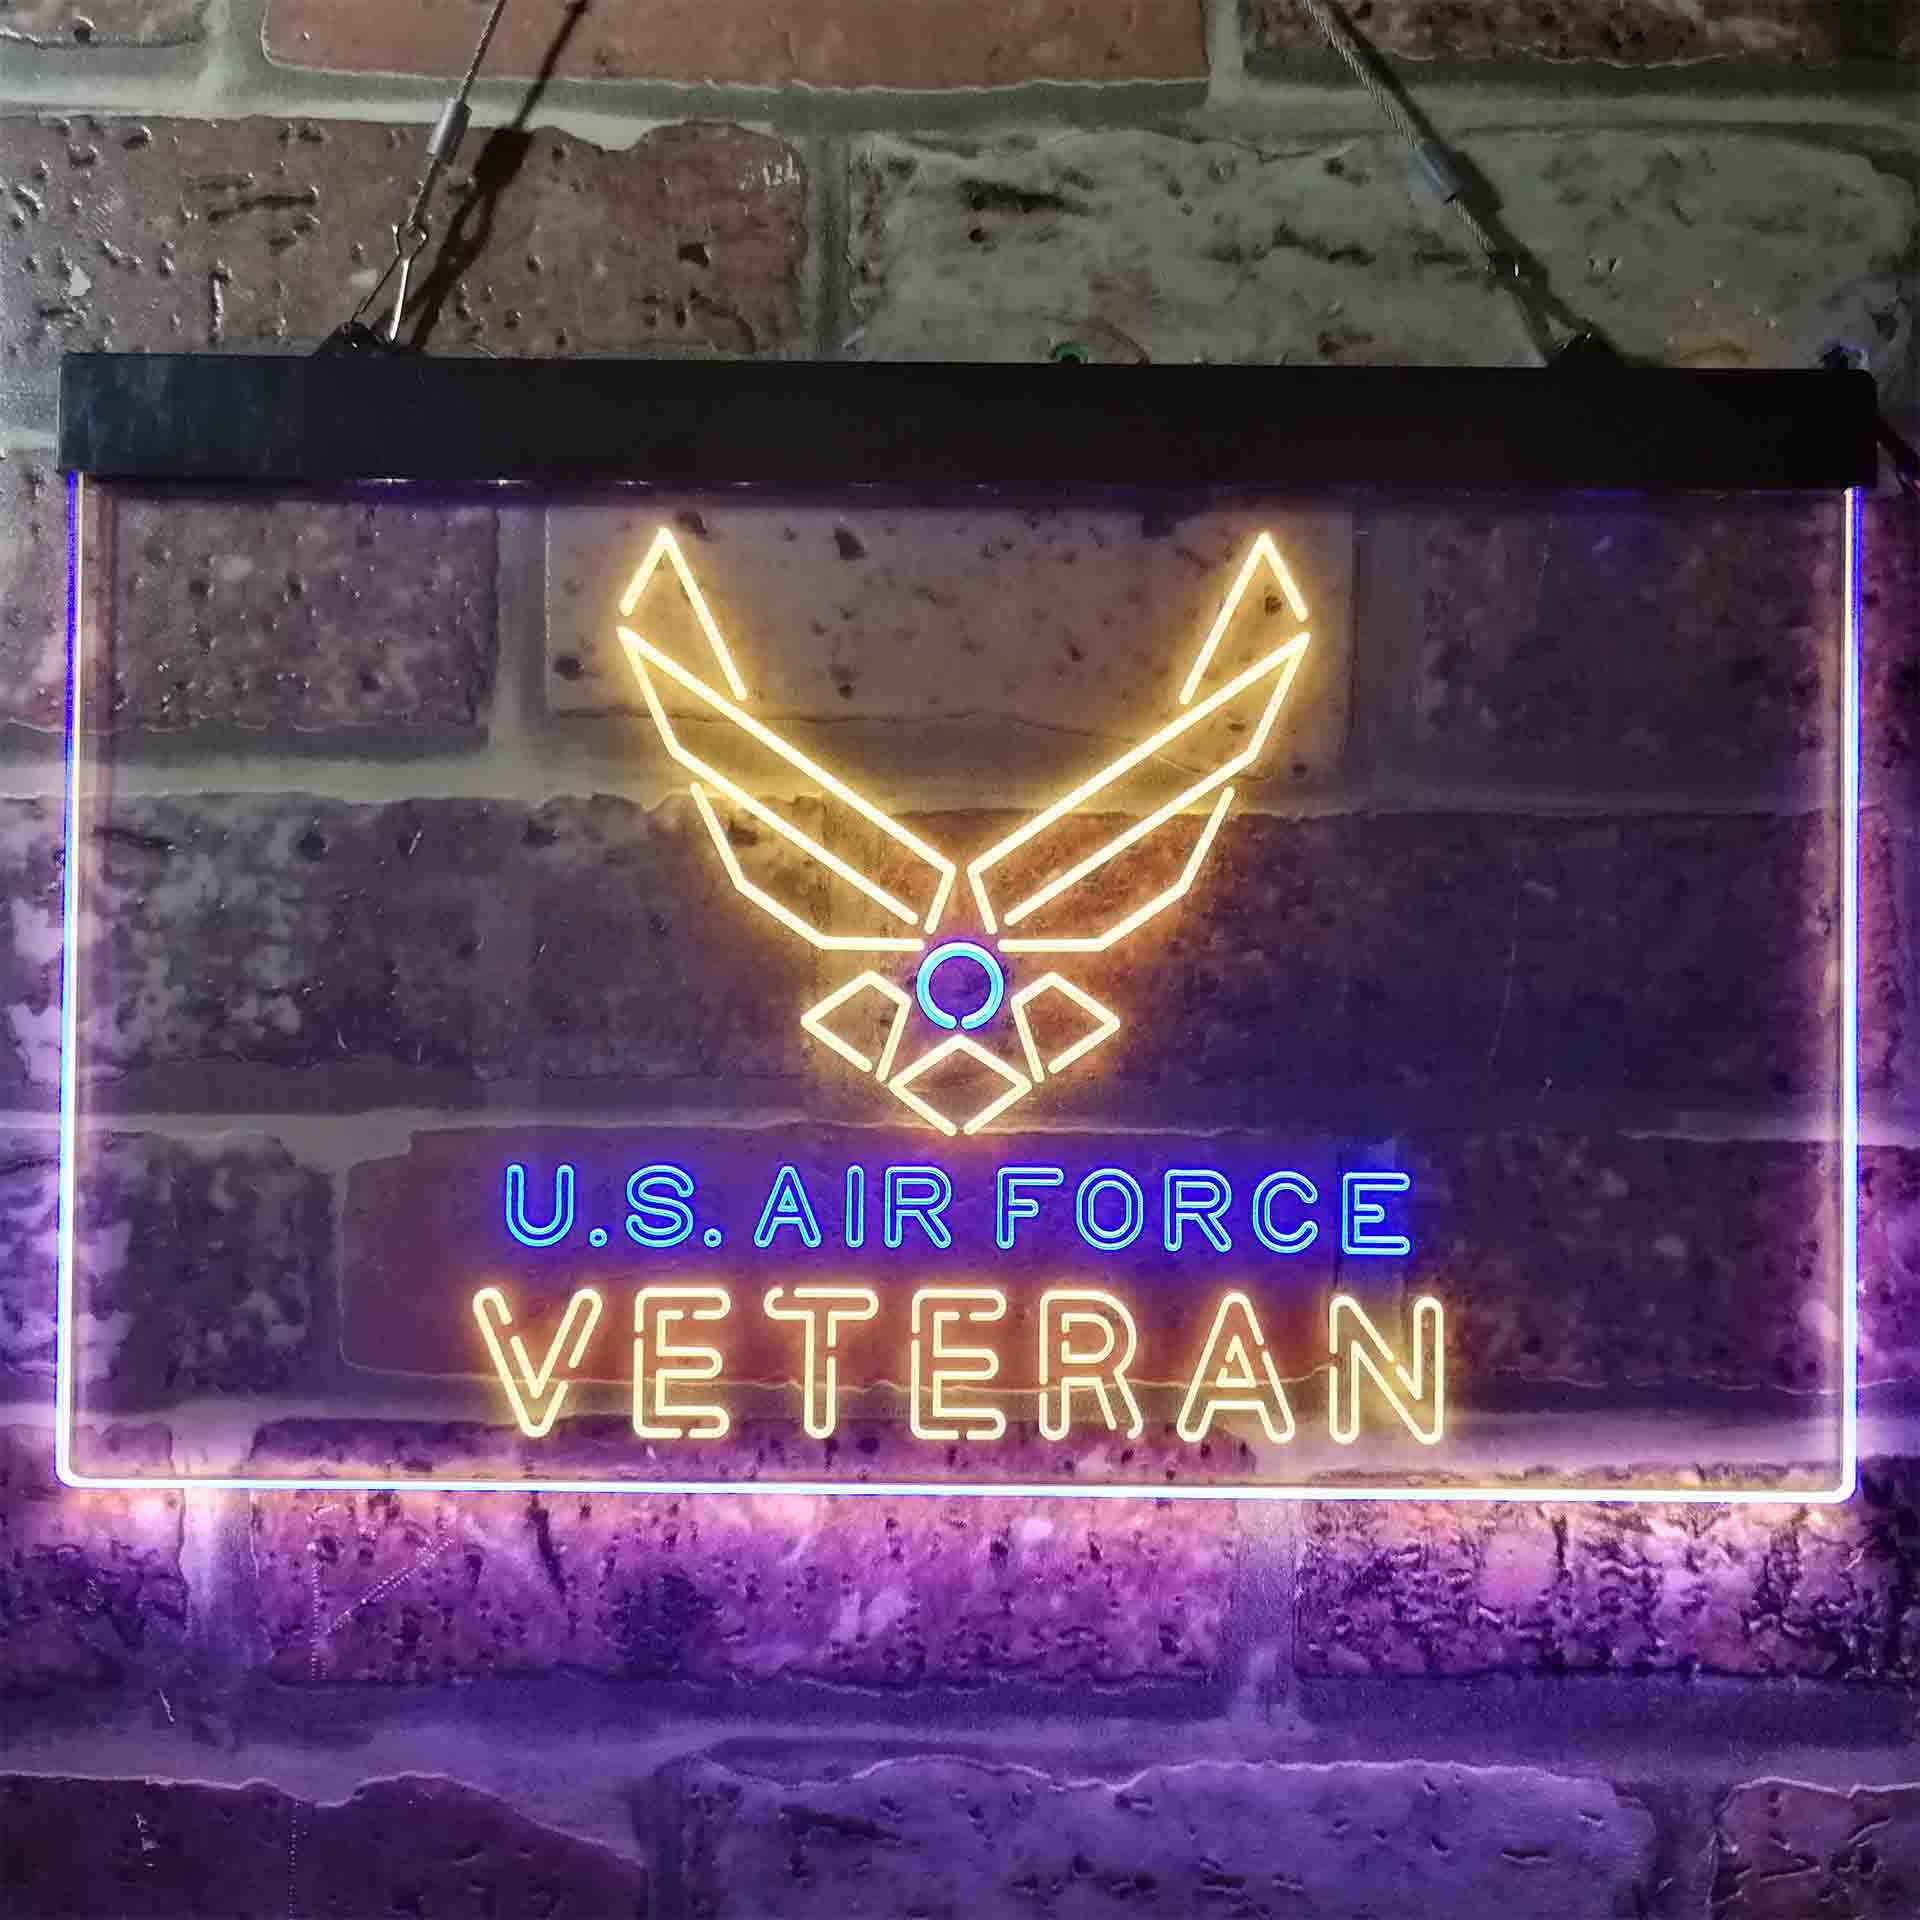 US Air Force Veteran Neon LED Sign